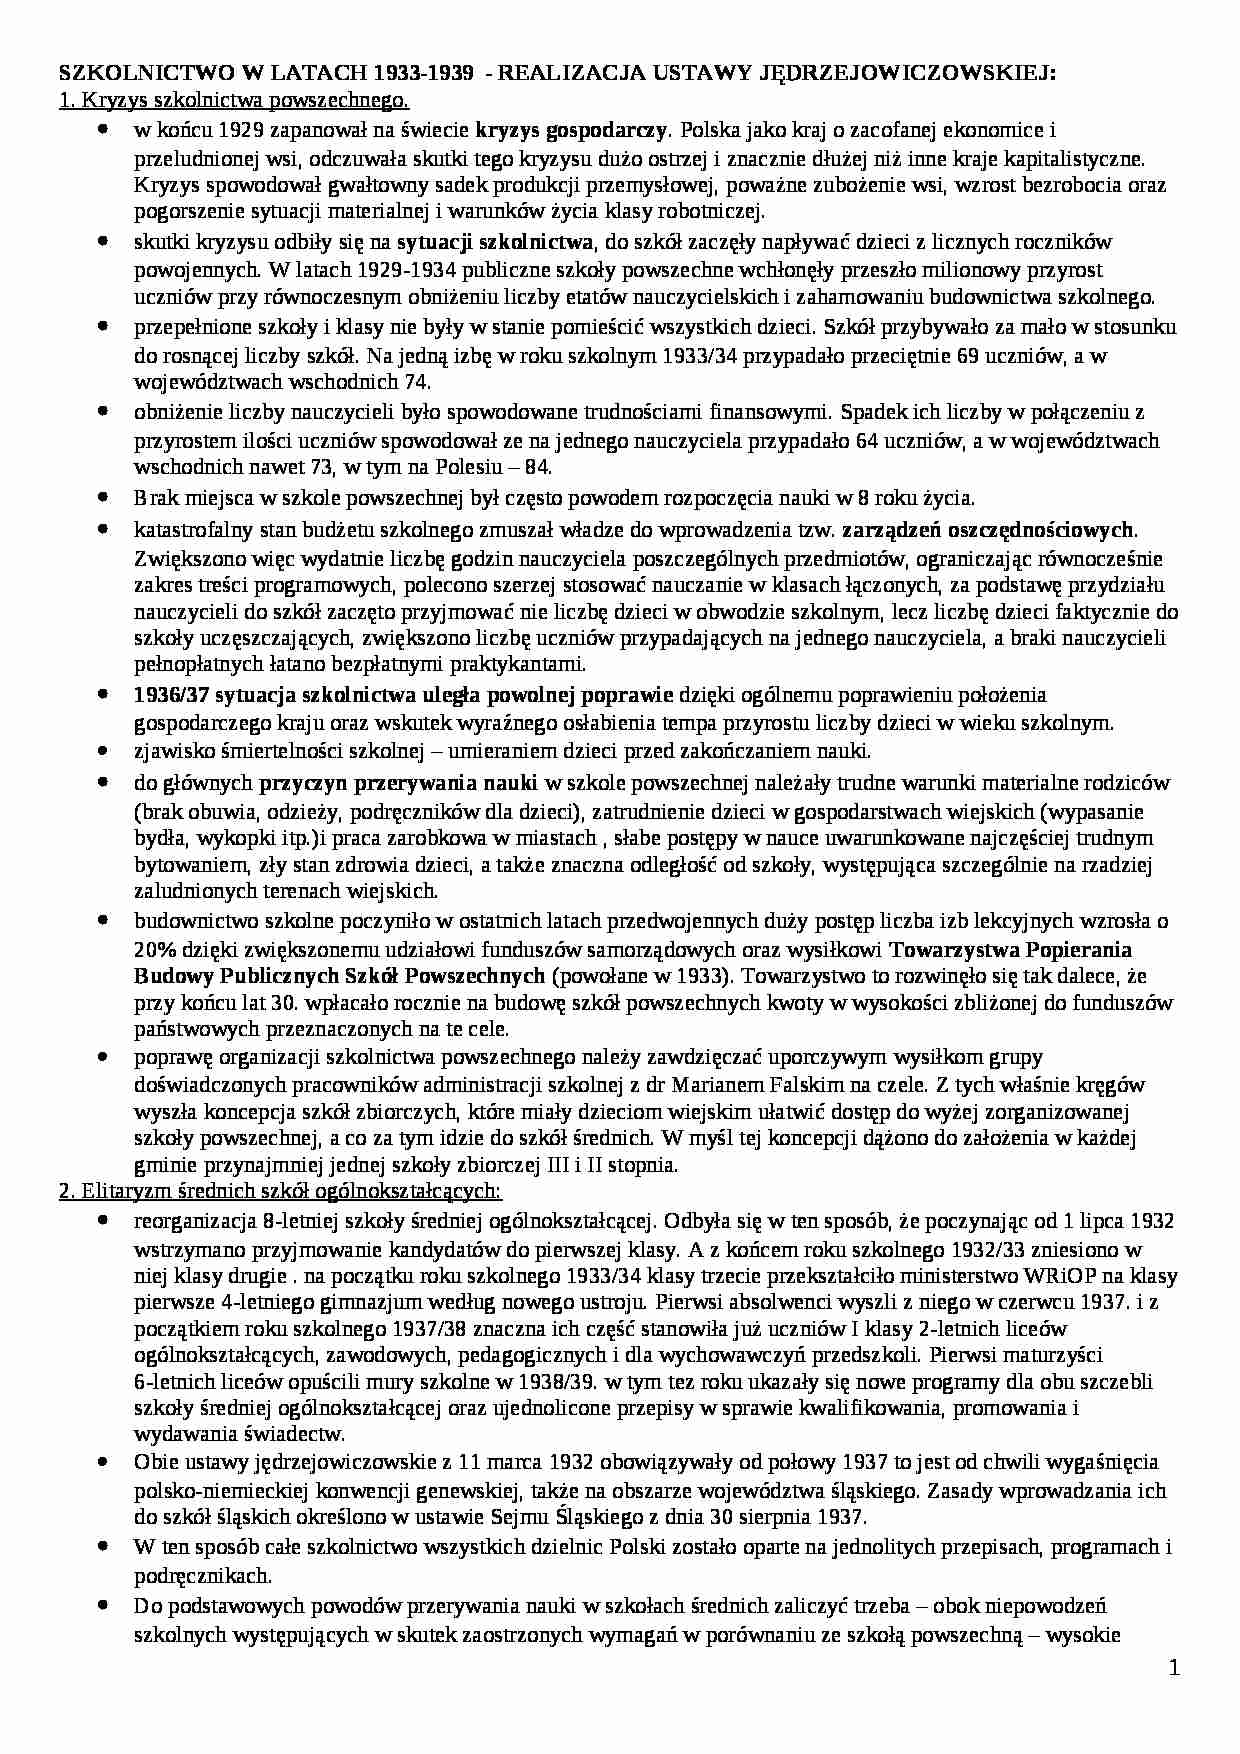 Reforma Jedrzejewicza 1933-1939 - strona 1